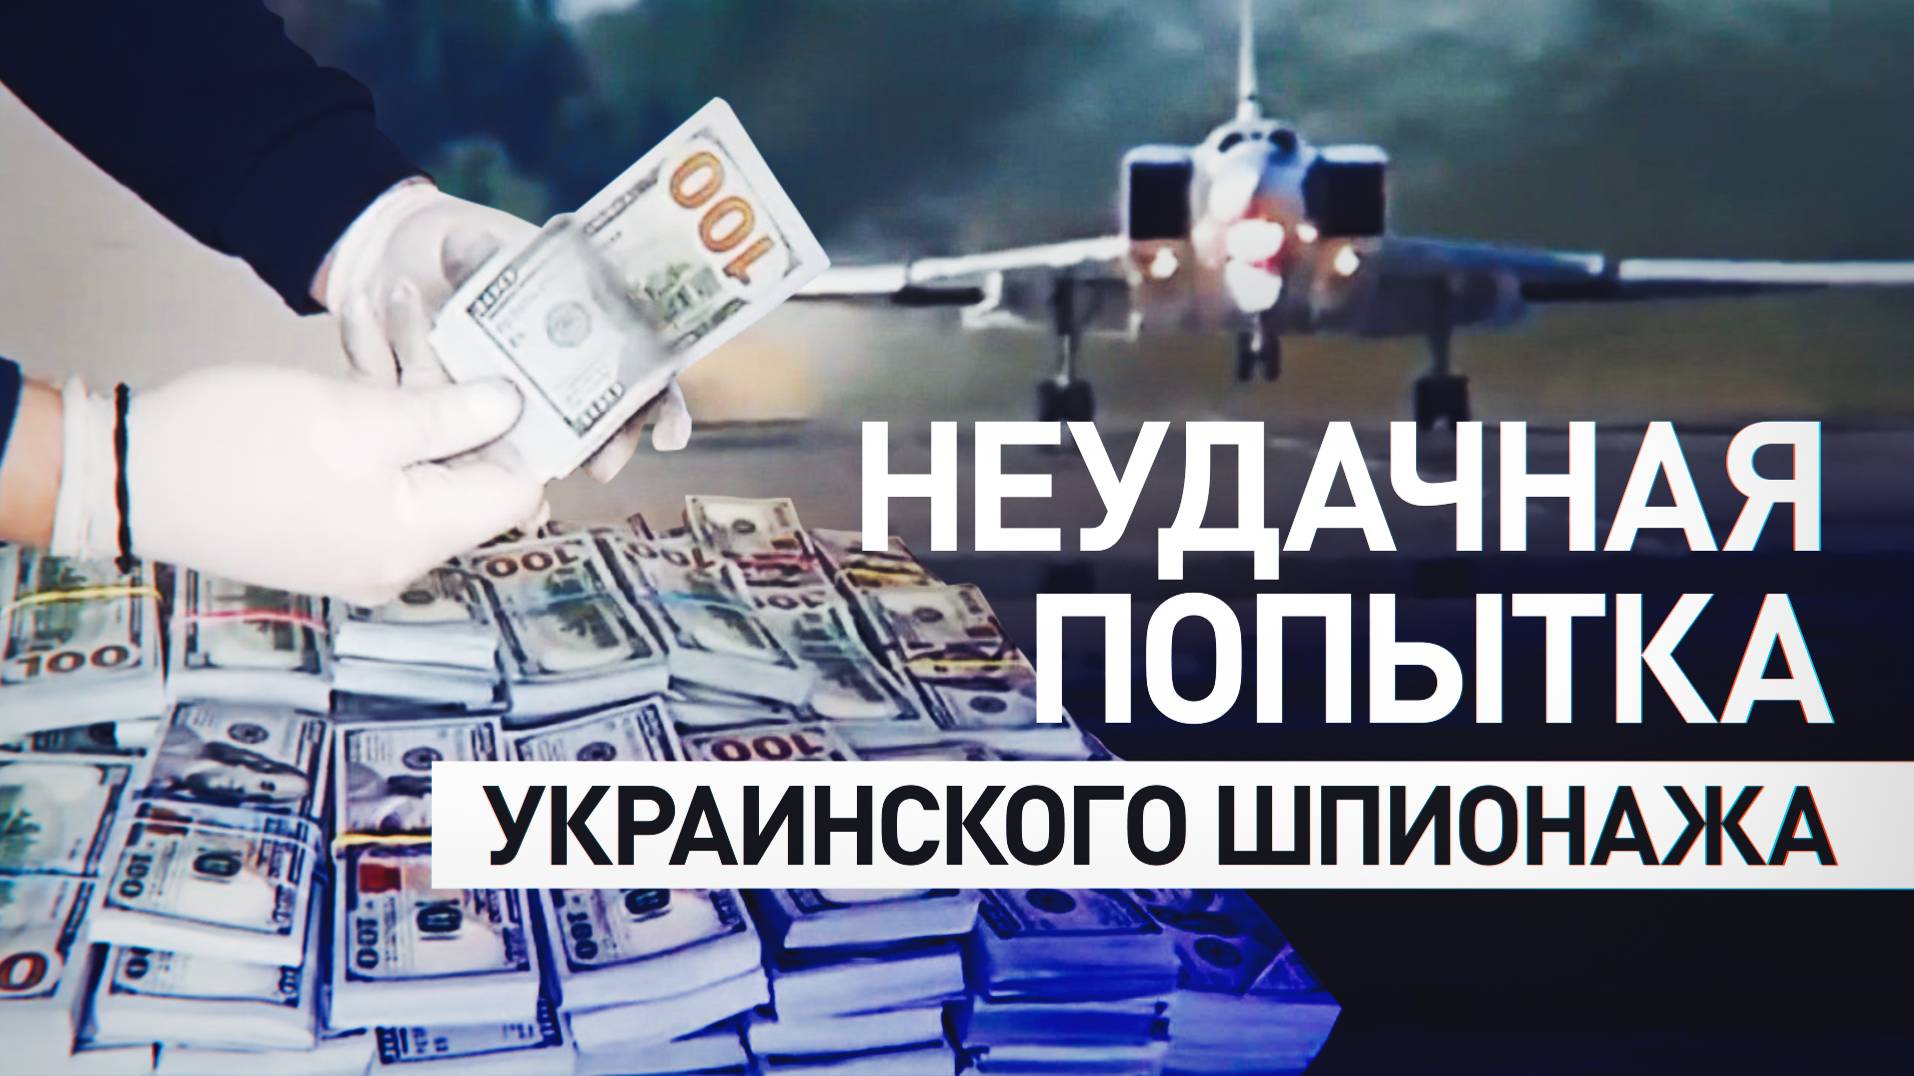 Пытались переманить российского пилота: украинский шпионаж обернулся провалом